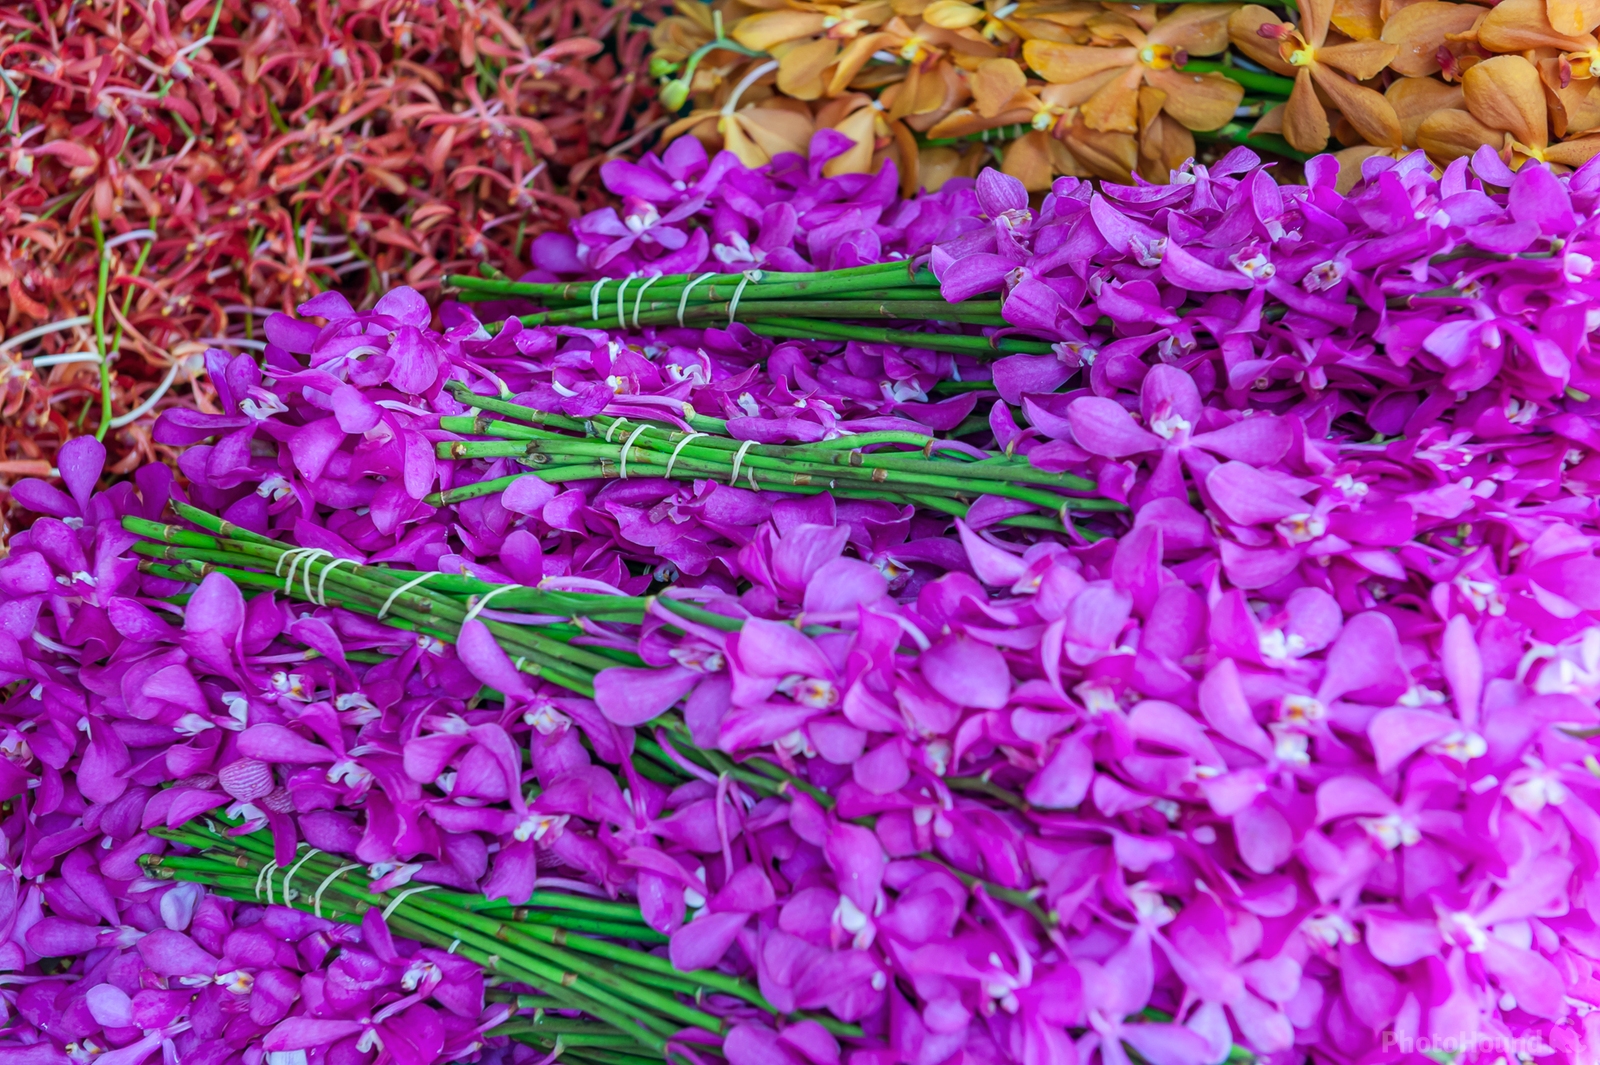 Image of Bangkok Flower Market (Pak Khlong Talat) by Sue Wolfe